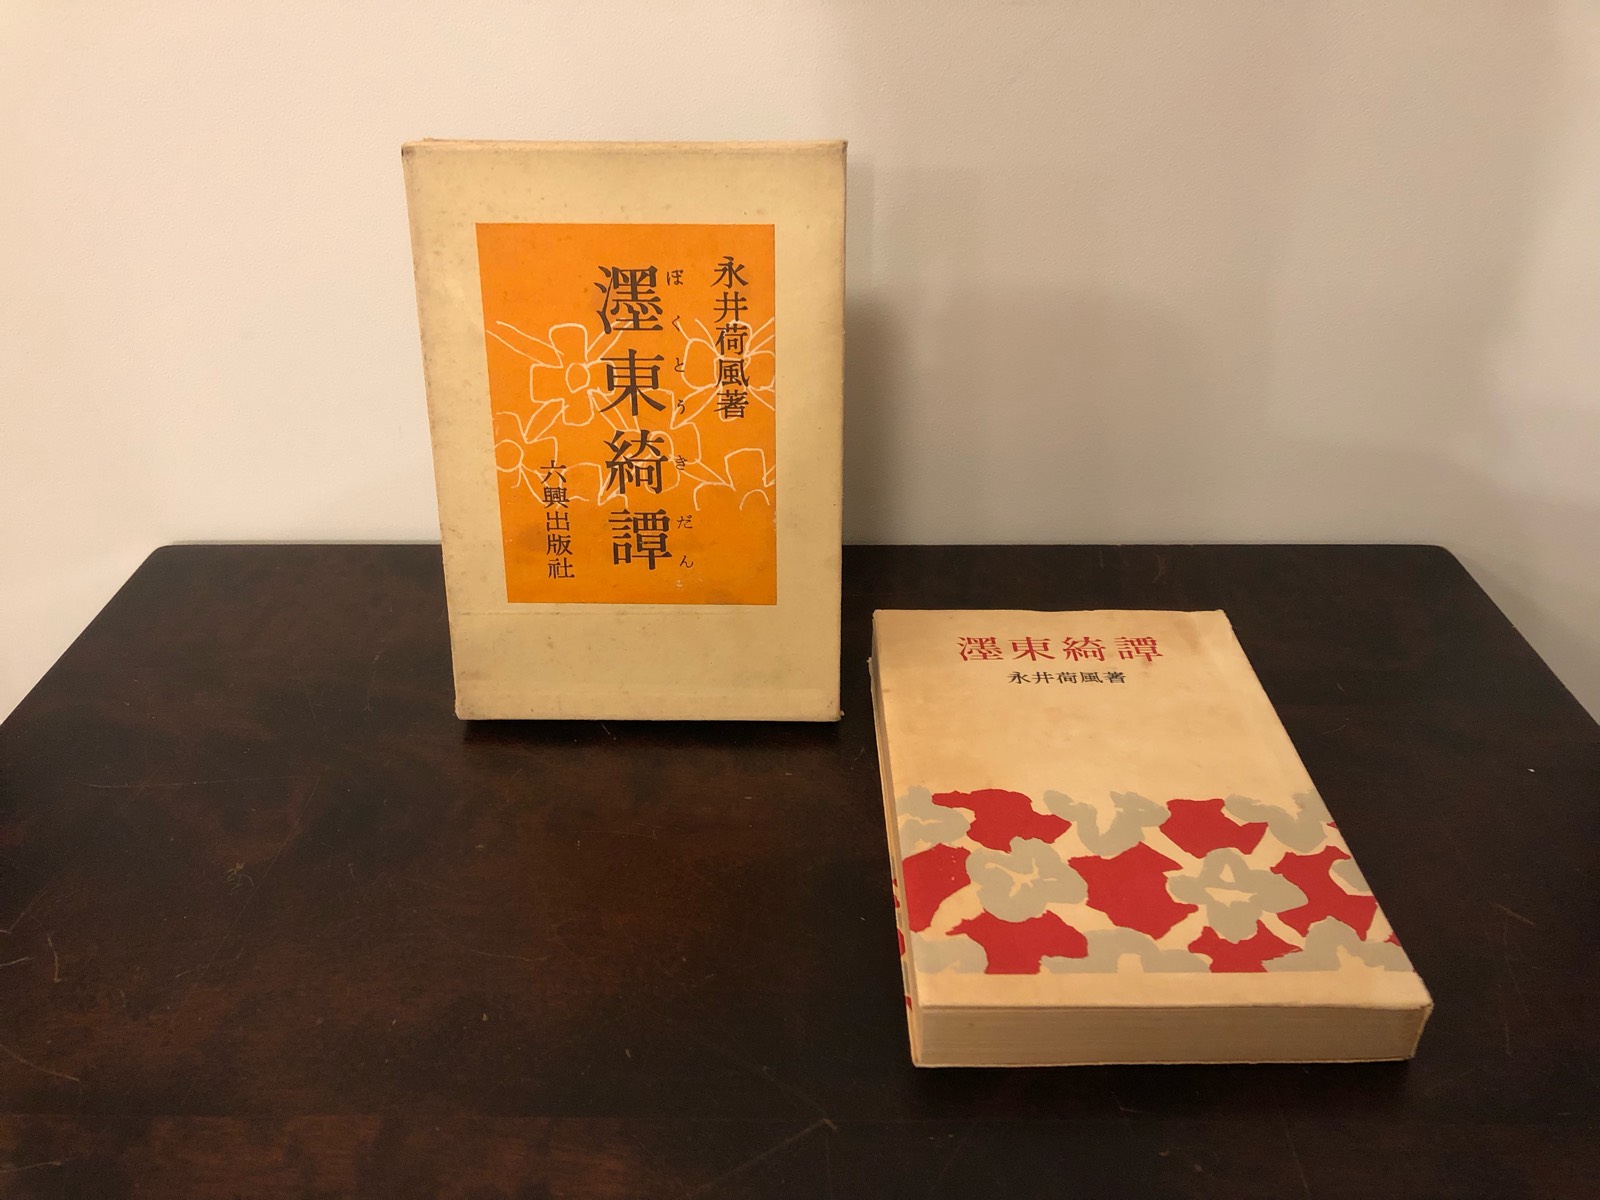 永井荷風「濹東綺譚」 1950年 六興出版社初版 函付き | Astarte